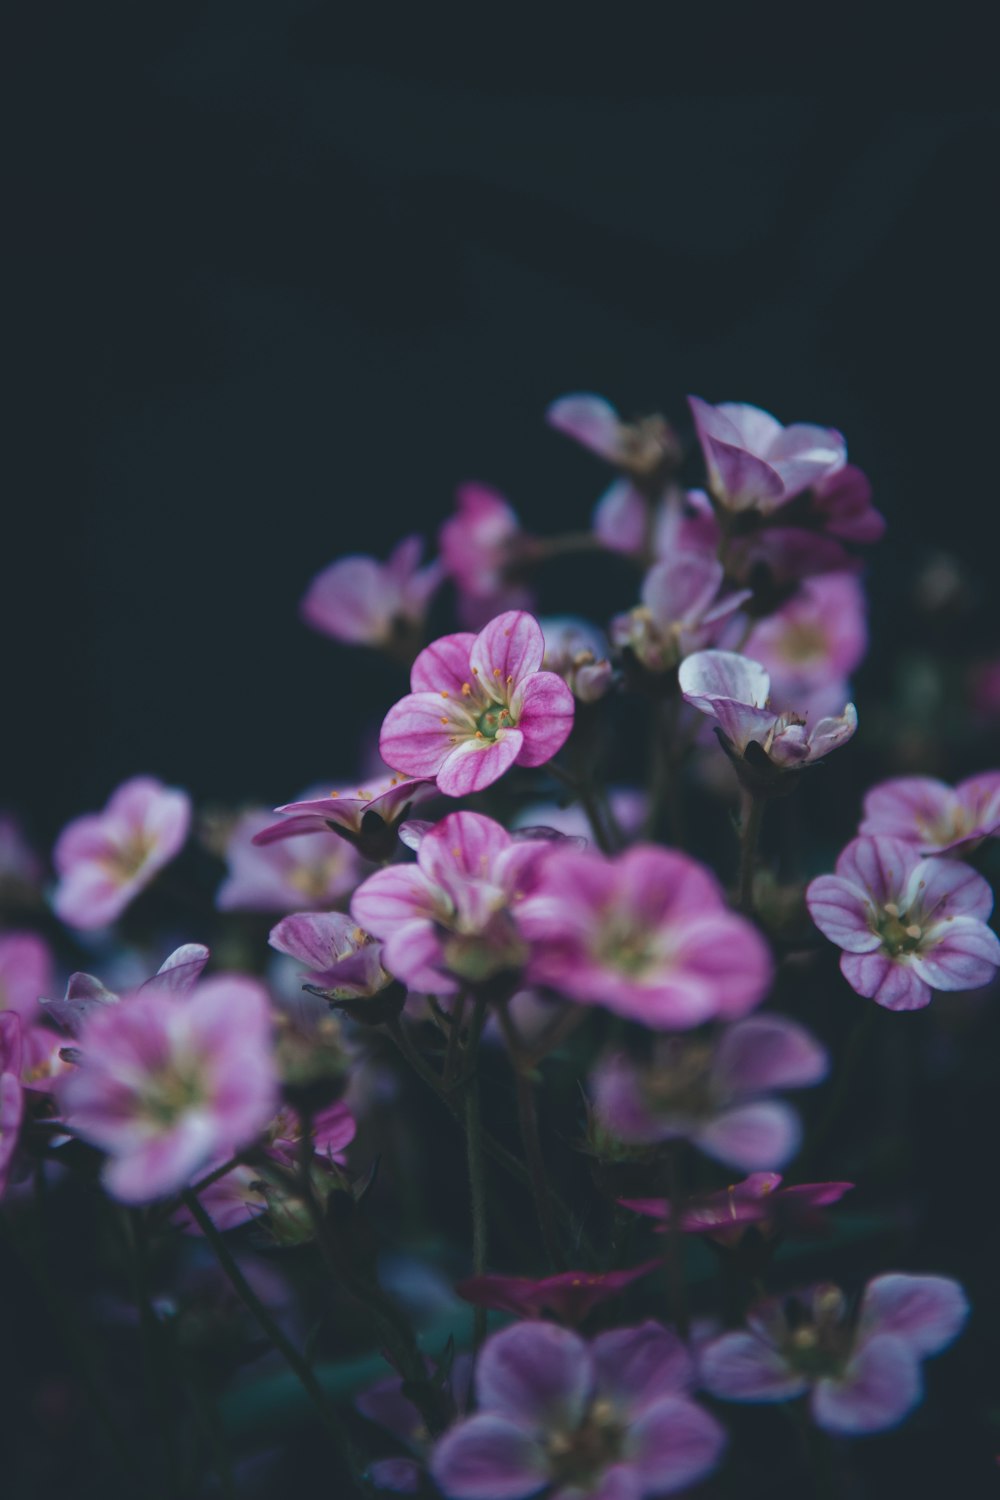 purple petaled flowers photo – Free Grey Image on Unsplash